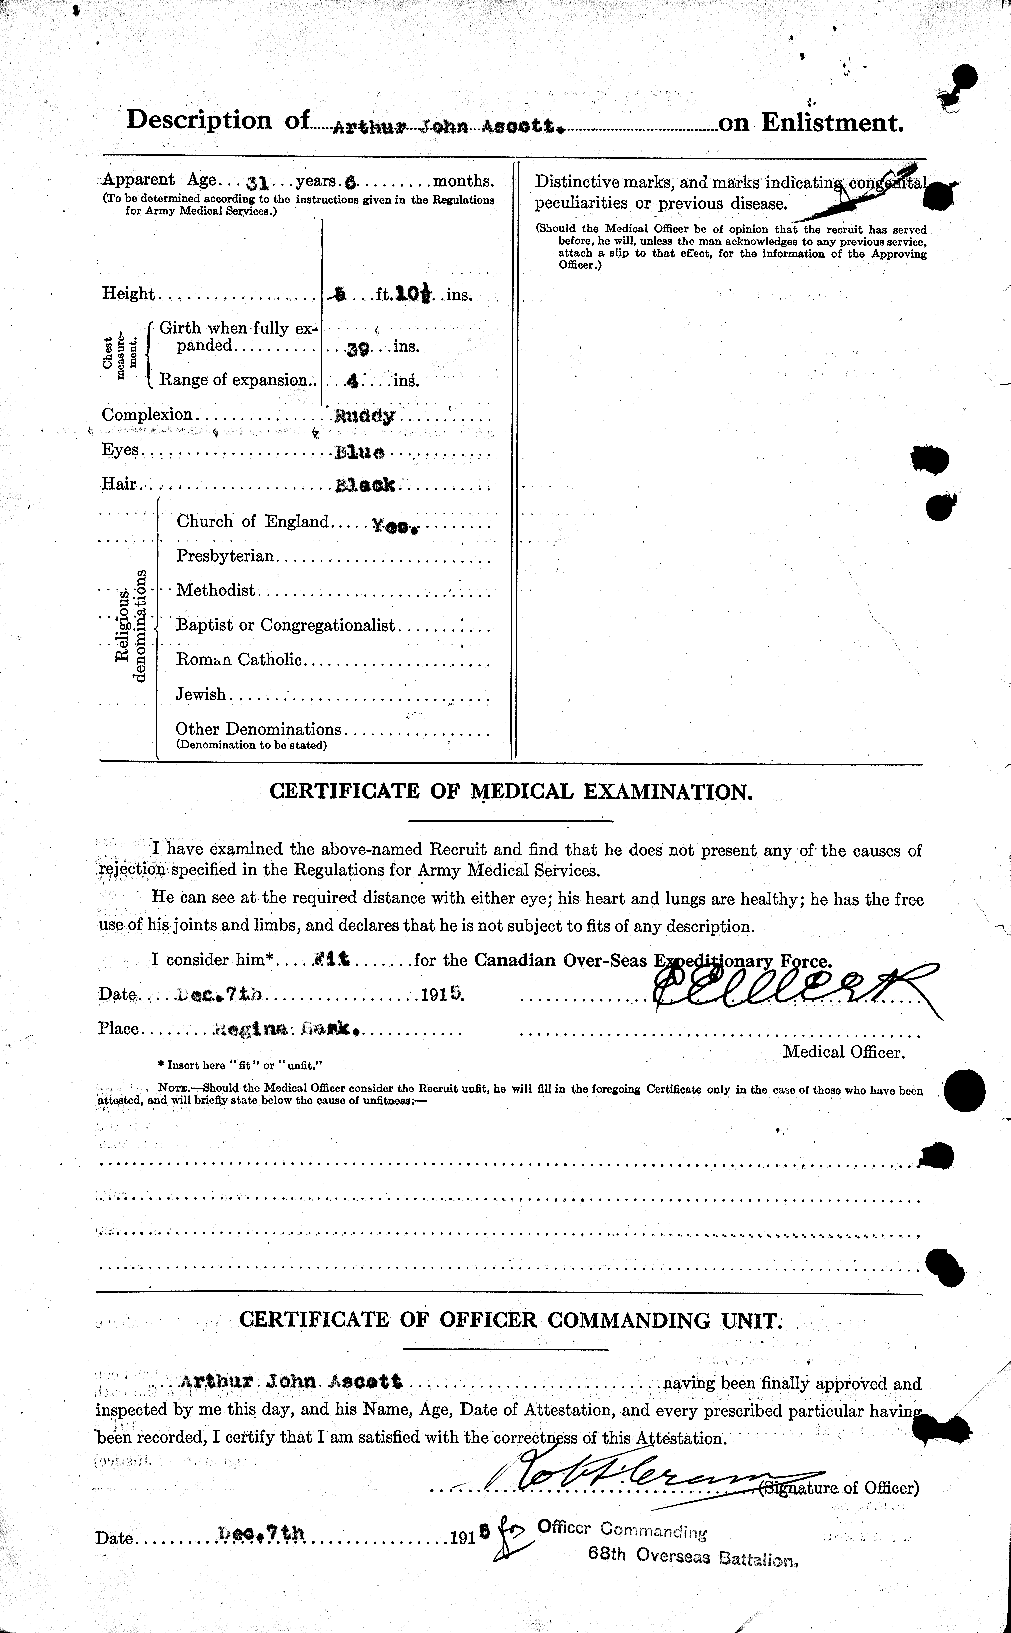 Dossiers du Personnel de la Première Guerre mondiale - CEC 214679b